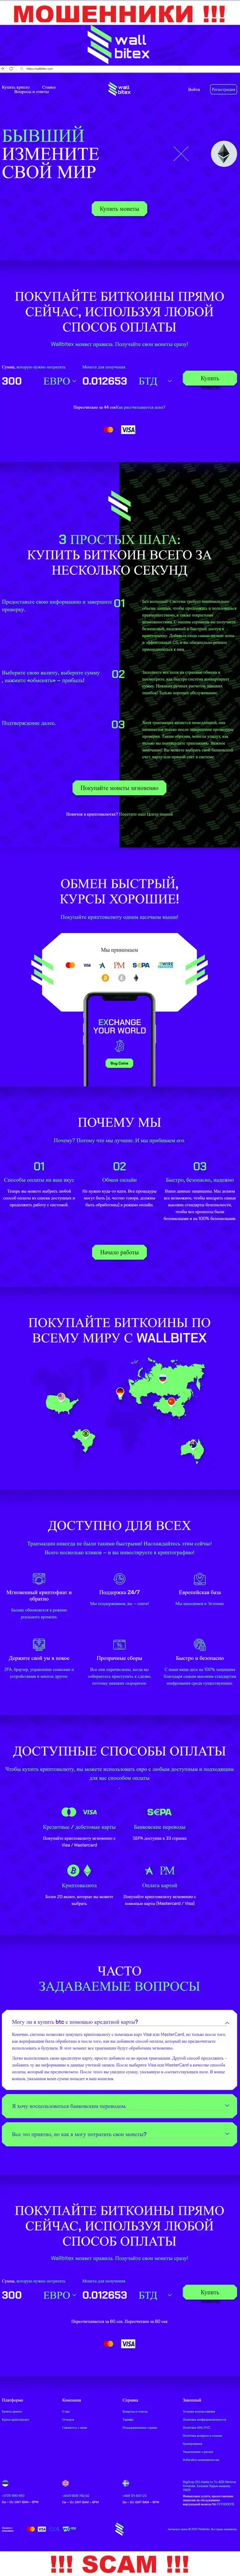 WallBitex Com - это официальный сайт неправомерно действующей организации WallBitex